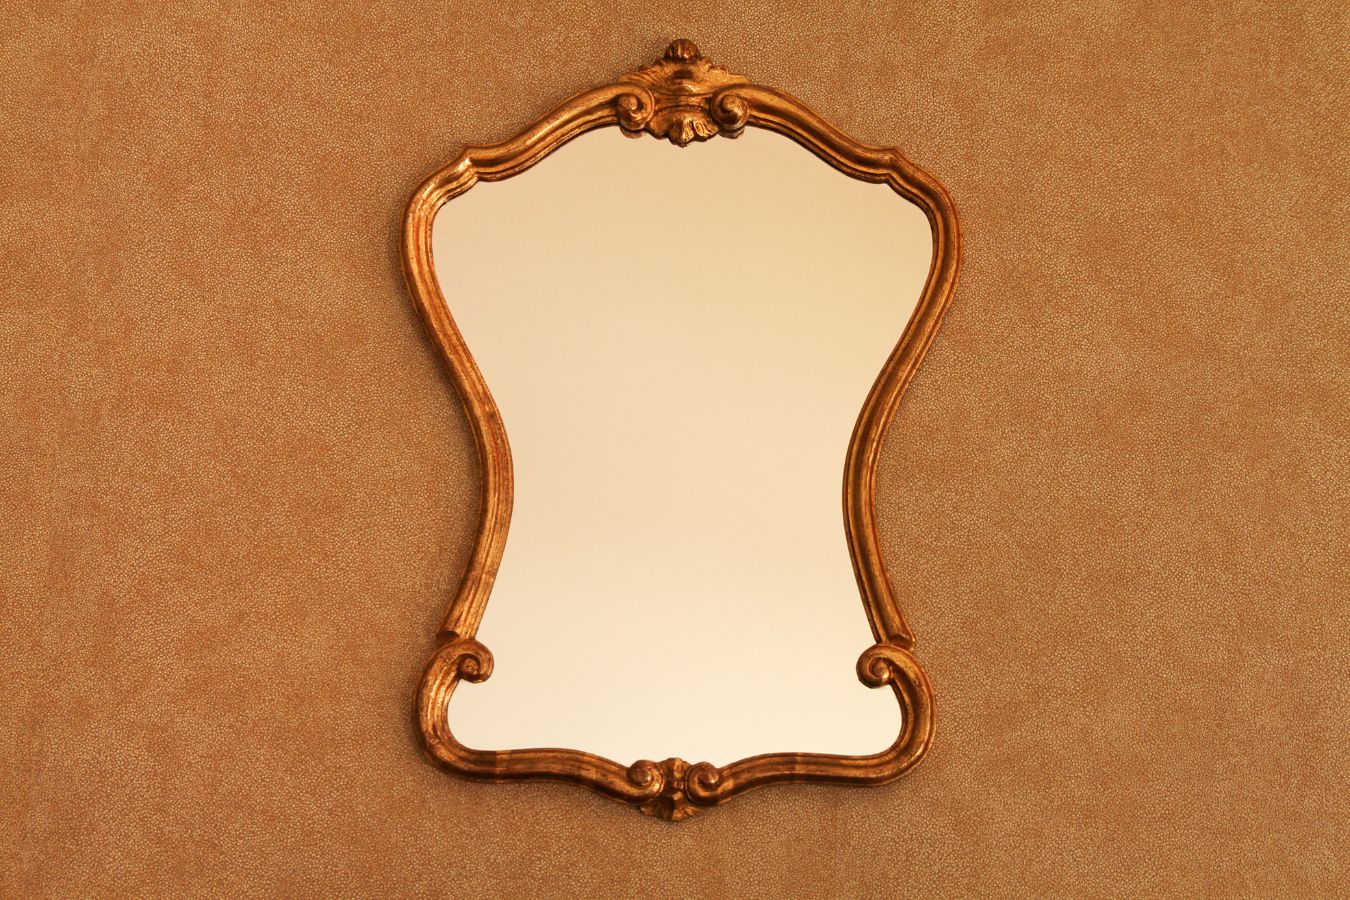 NSPIRE-SE para escolher o melhor espelho com moldura de madeira para seu décor